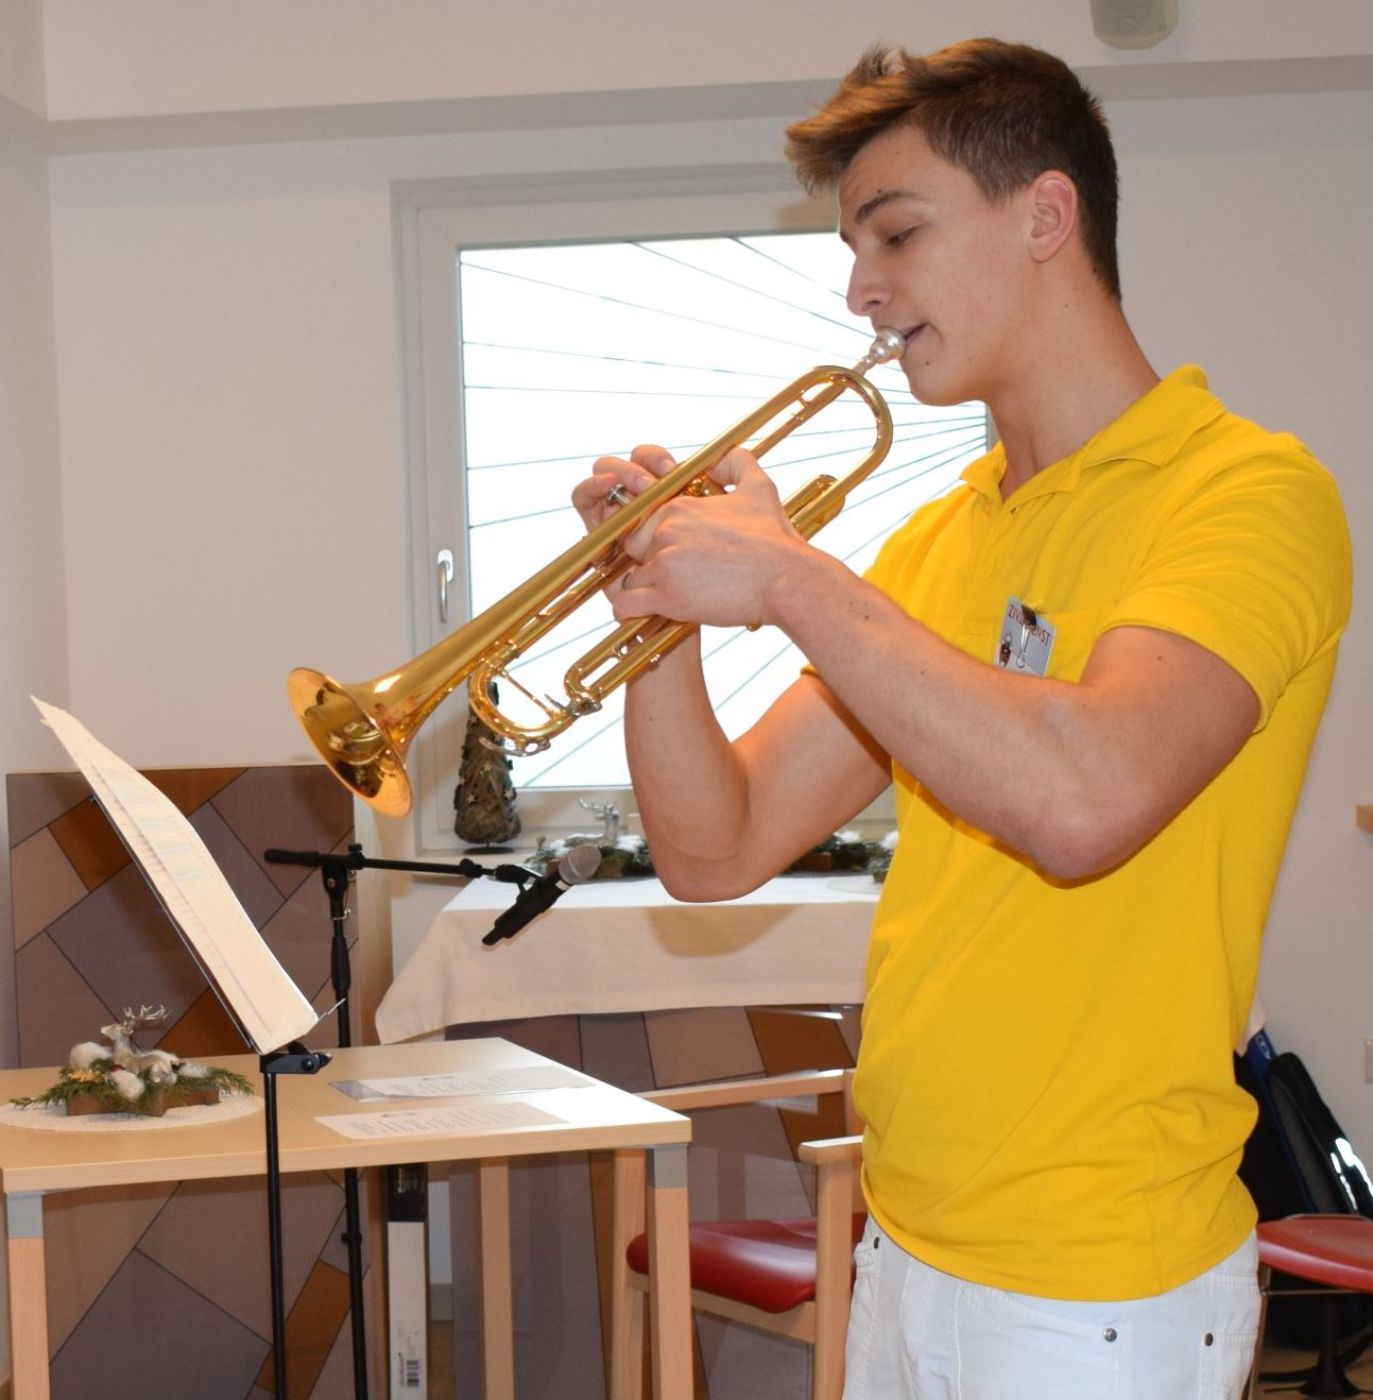 Ein Zivildiener spielt im Seniorenheim mit einer Trompete, er trägt ein gelbes T-Shirt und eine weiße Hose.